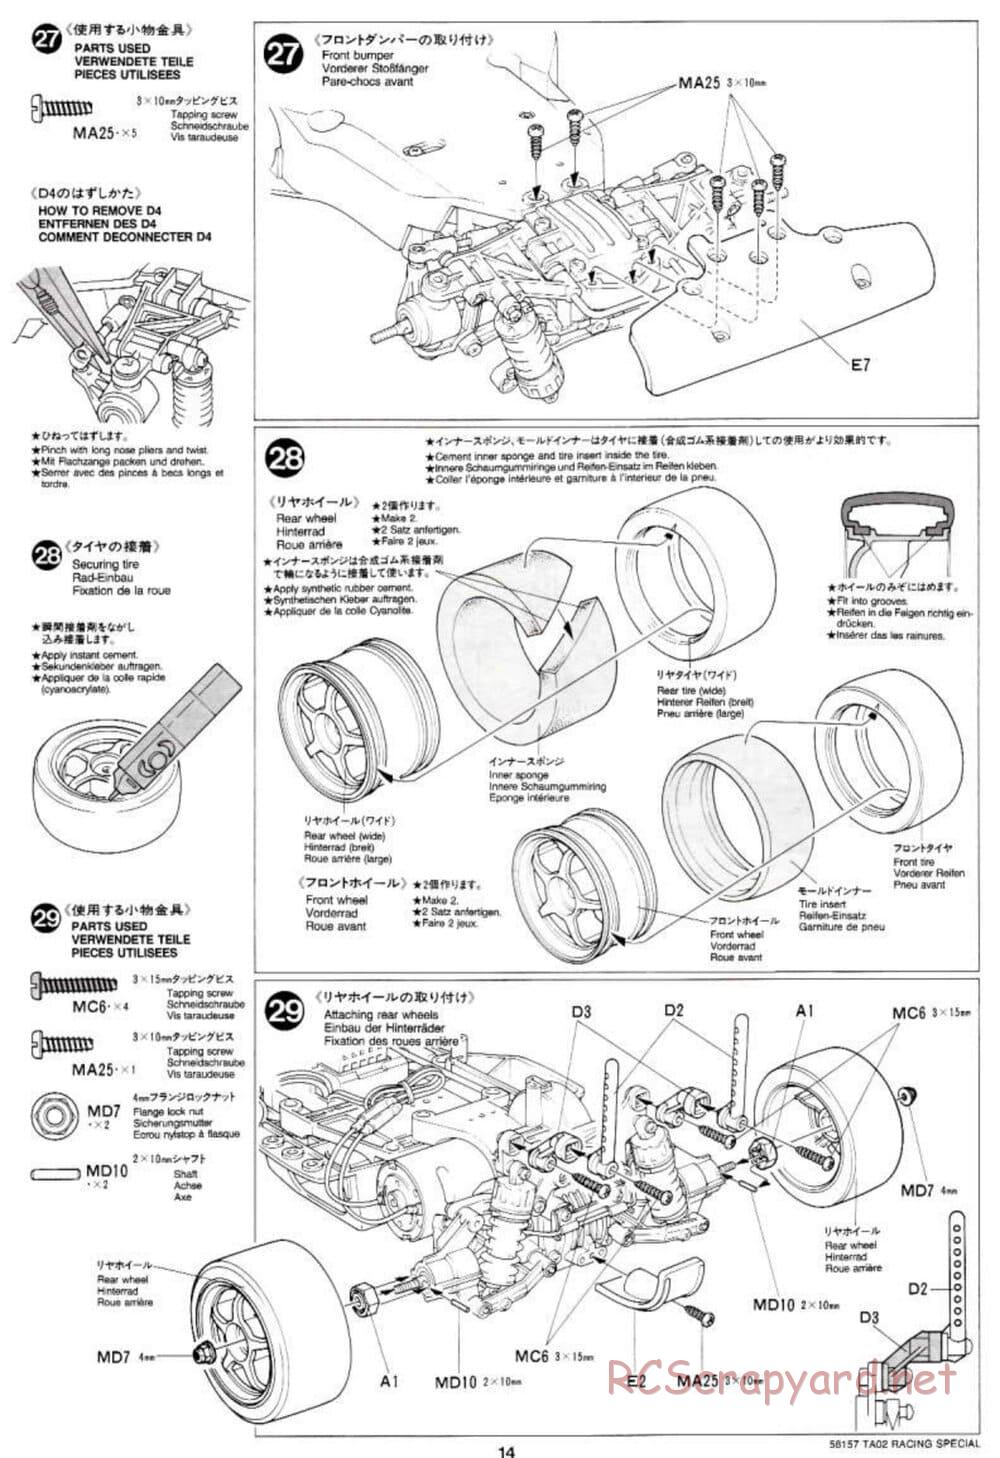 Tamiya - TA-02RS Chassis - Manual - Page 14